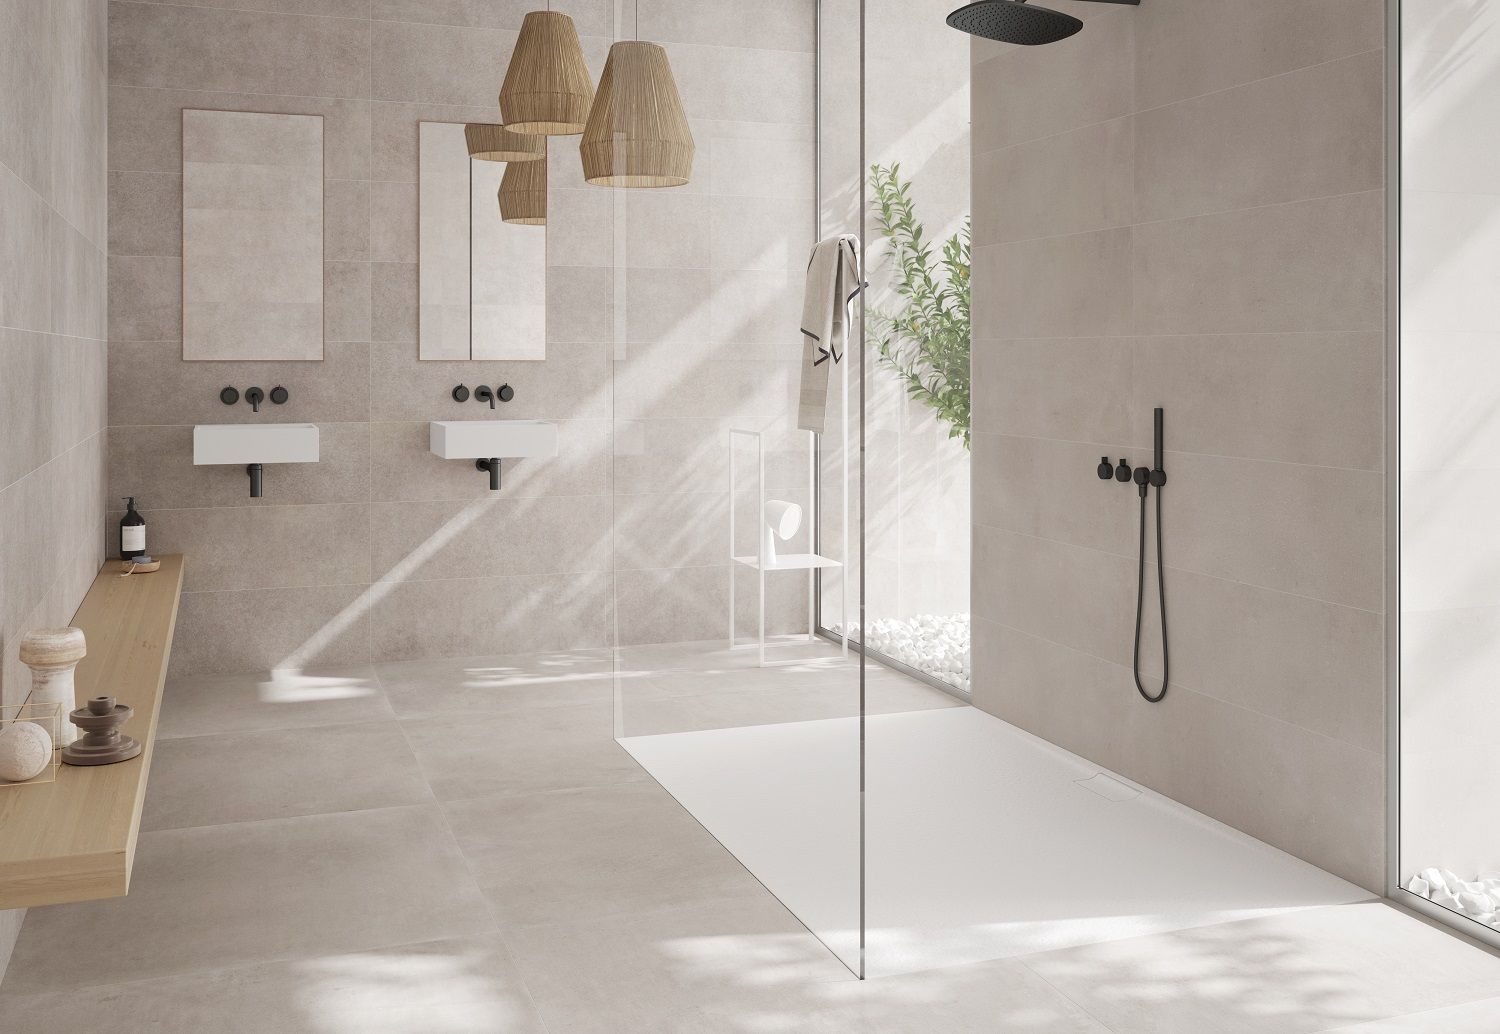 Renovar el baño: ideas de duchas modernas